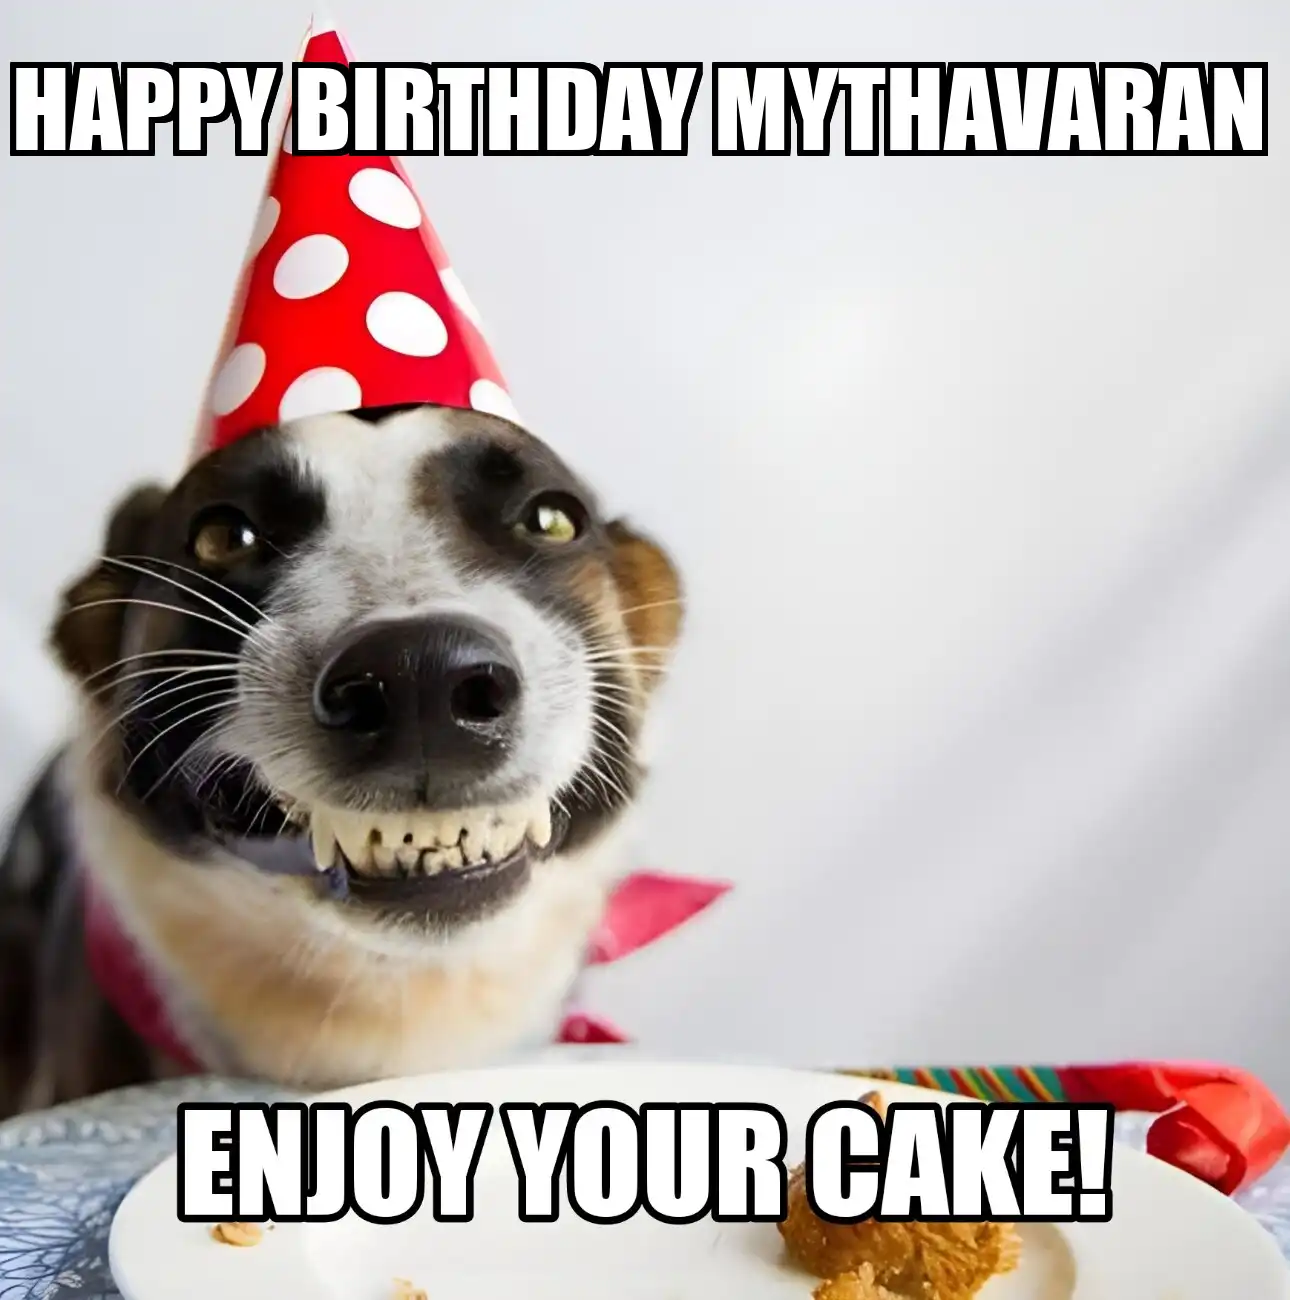 Happy Birthday Mythavaran Enjoy Your Cake Dog Meme